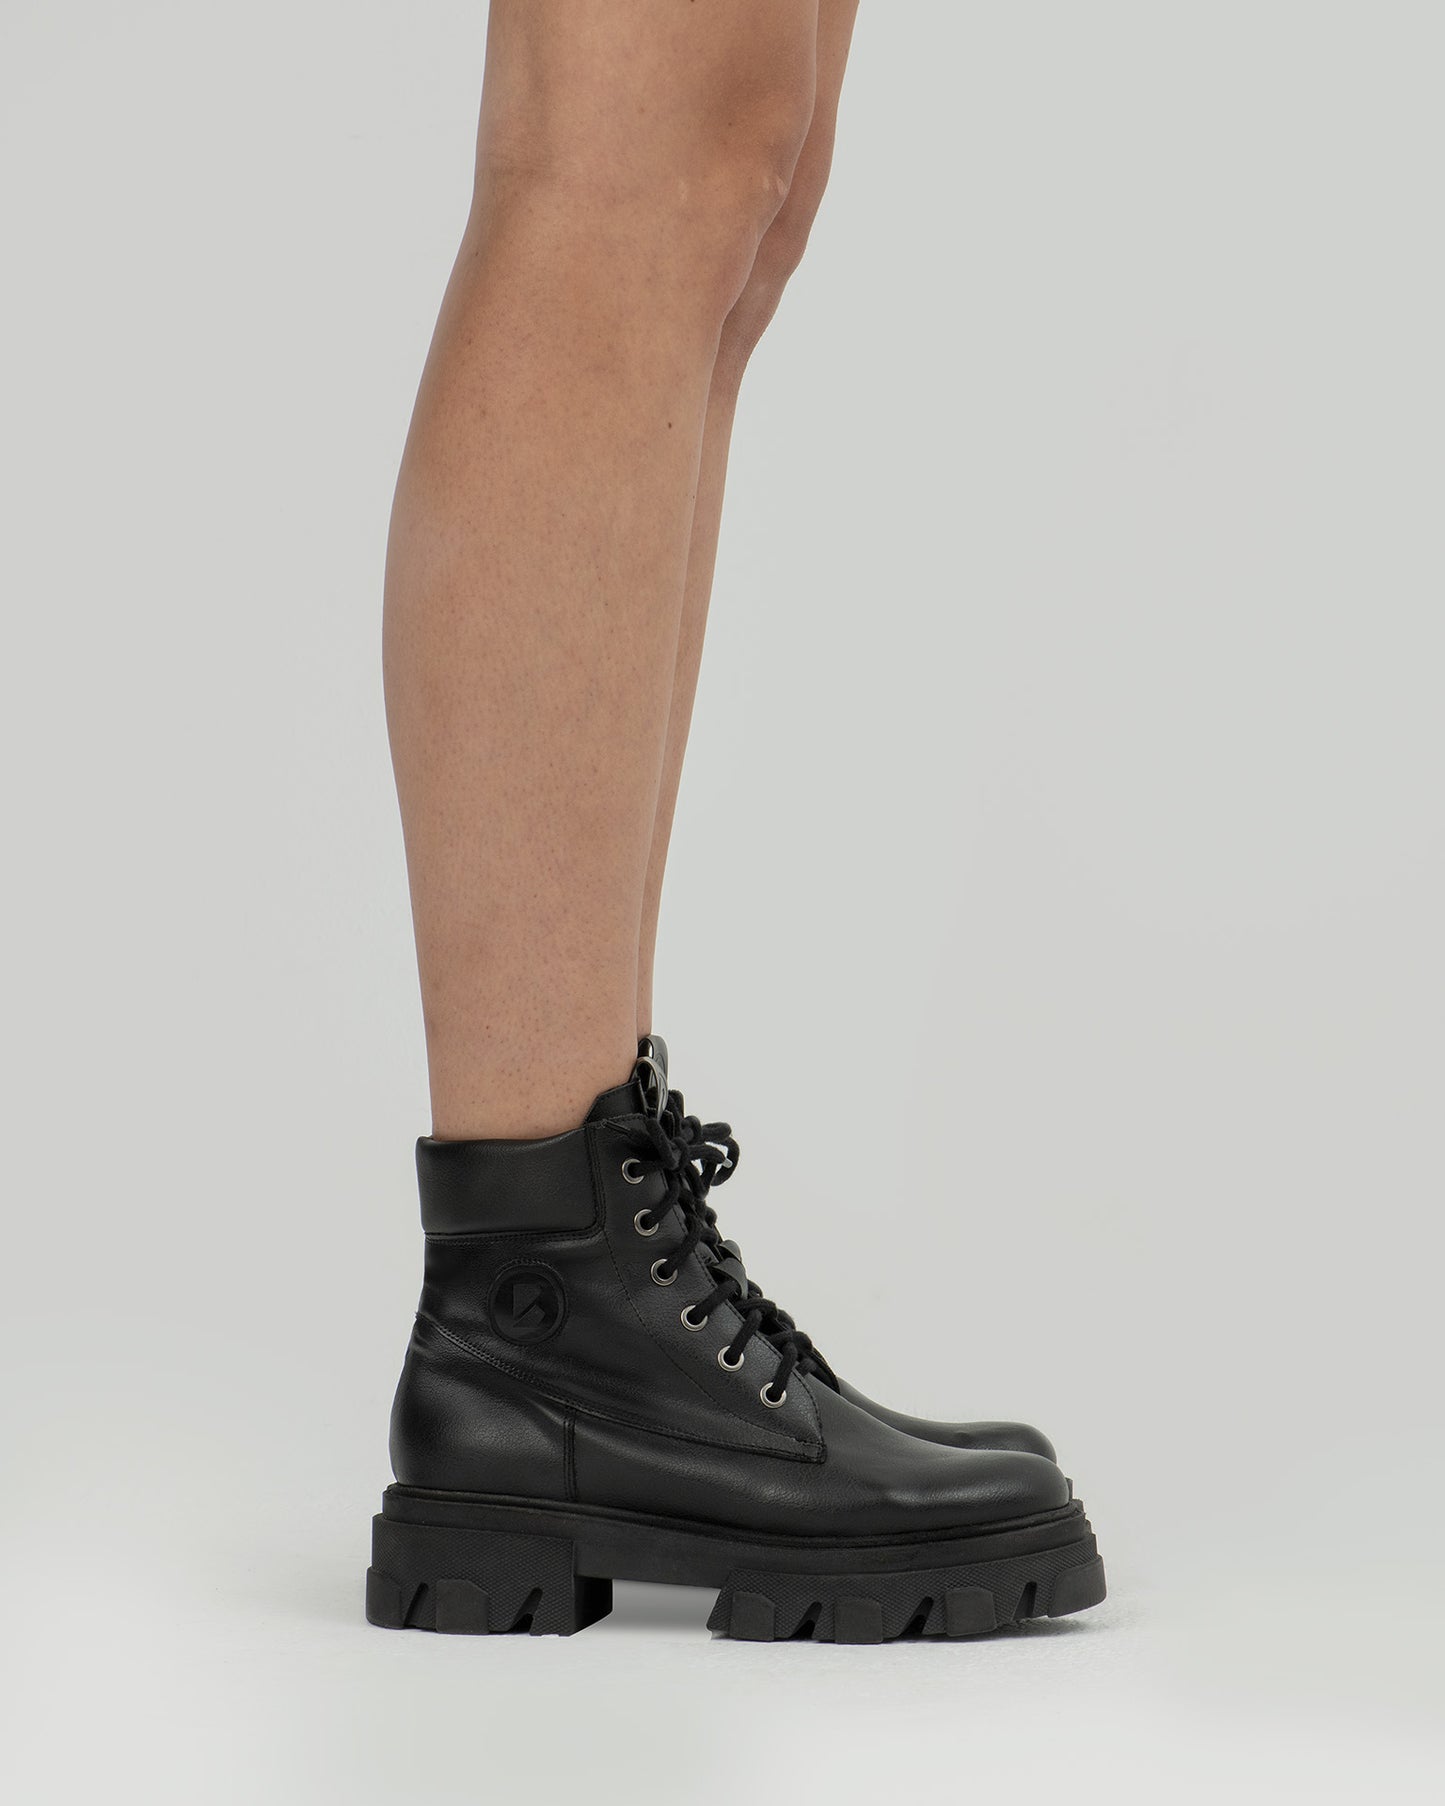 Riot Boots krótkie wegańskie botki damskie w stylu “worker boots”